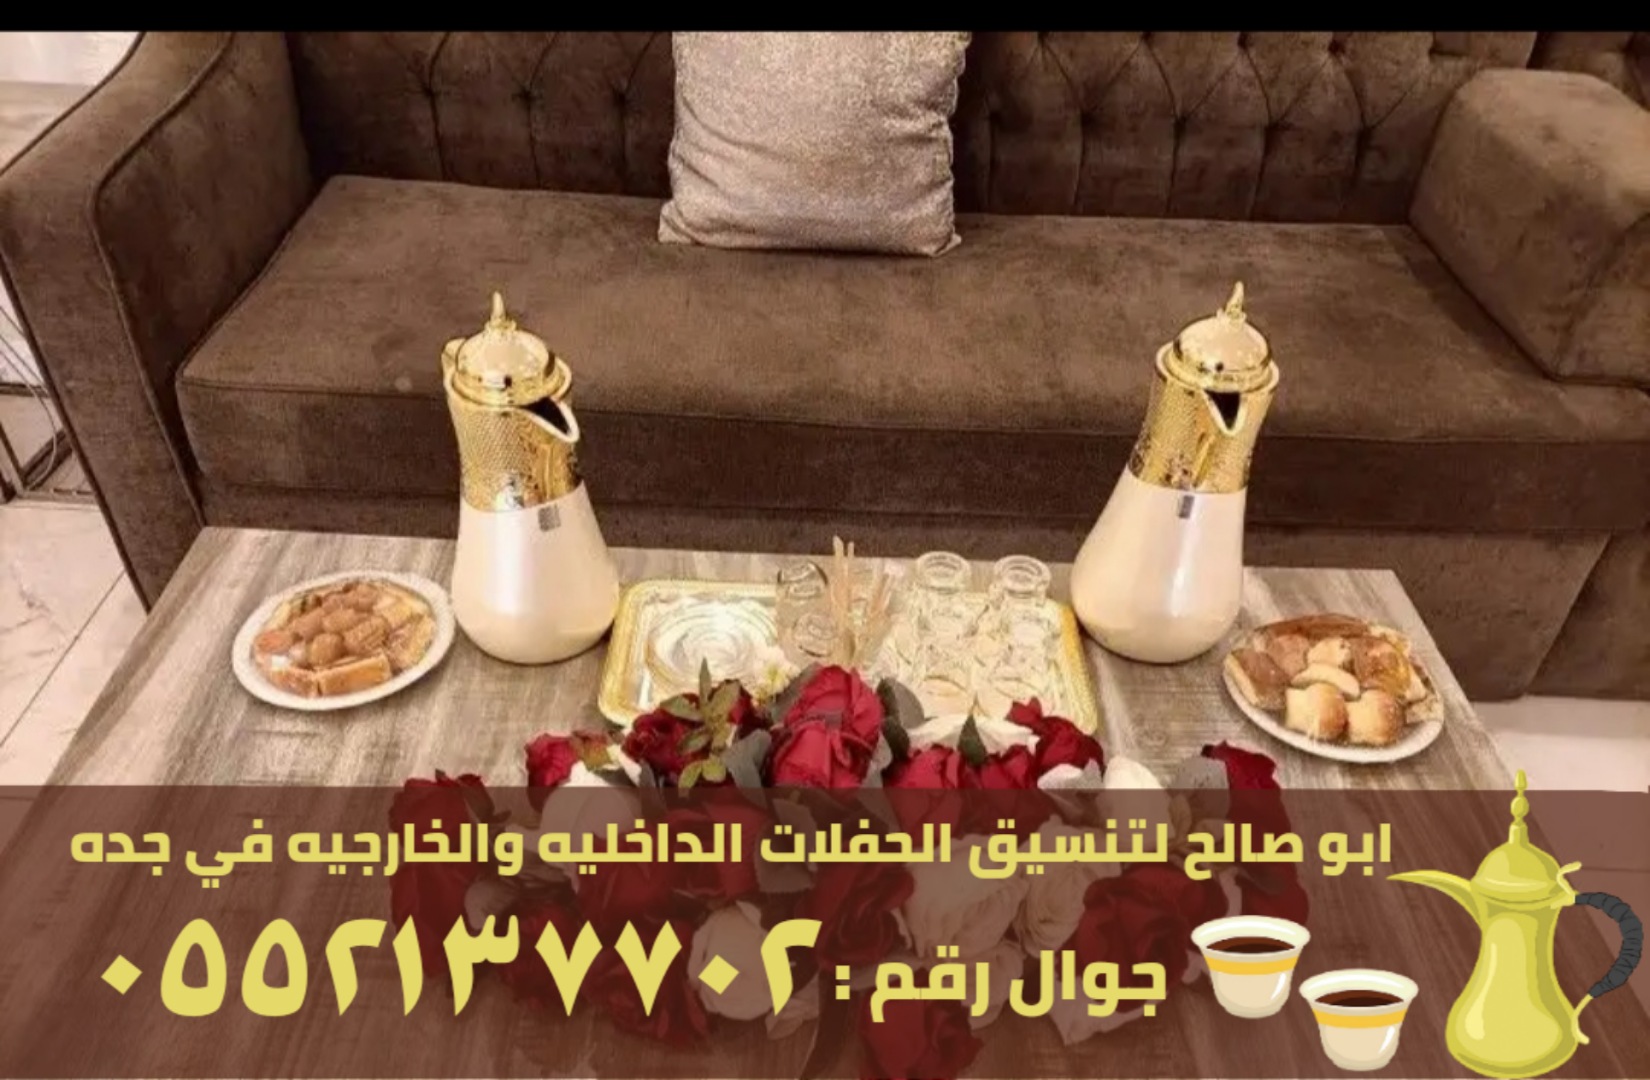 صبابين قهوة و مباشرات في جدة, 0552137702 P_2562hv5dj6